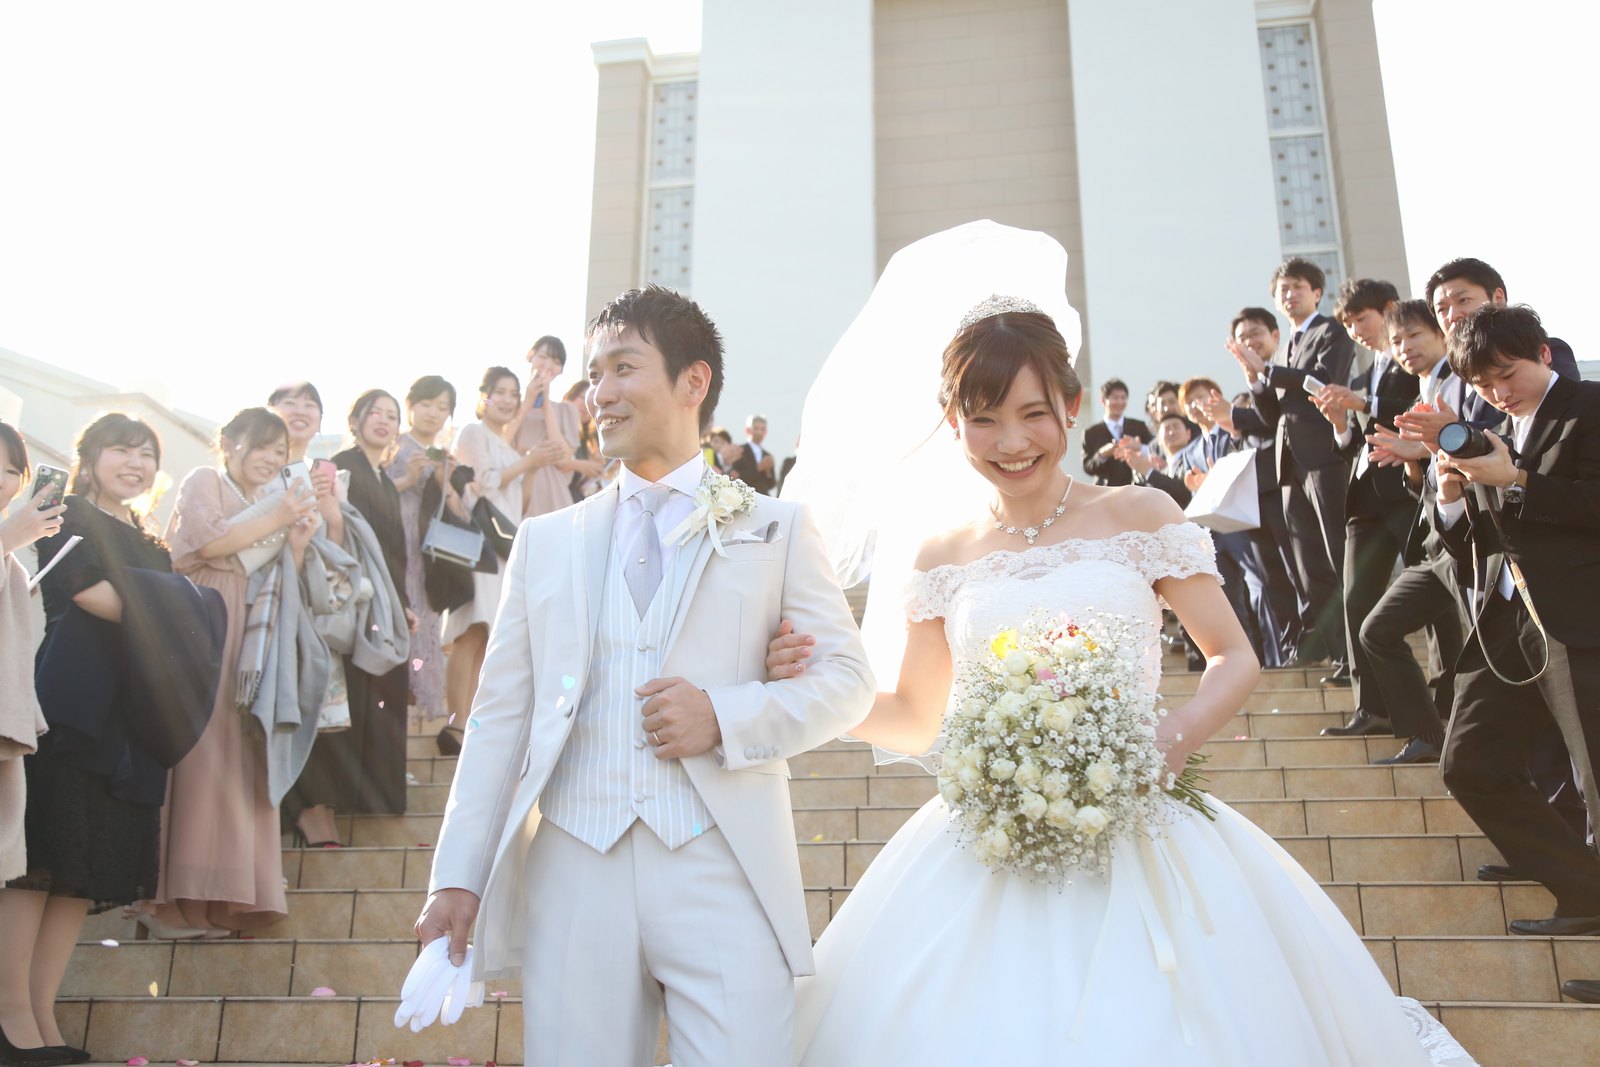 徳島市の結婚式場ブランアンジュの大階段のアフターセレモニーで祝福される新郎新婦